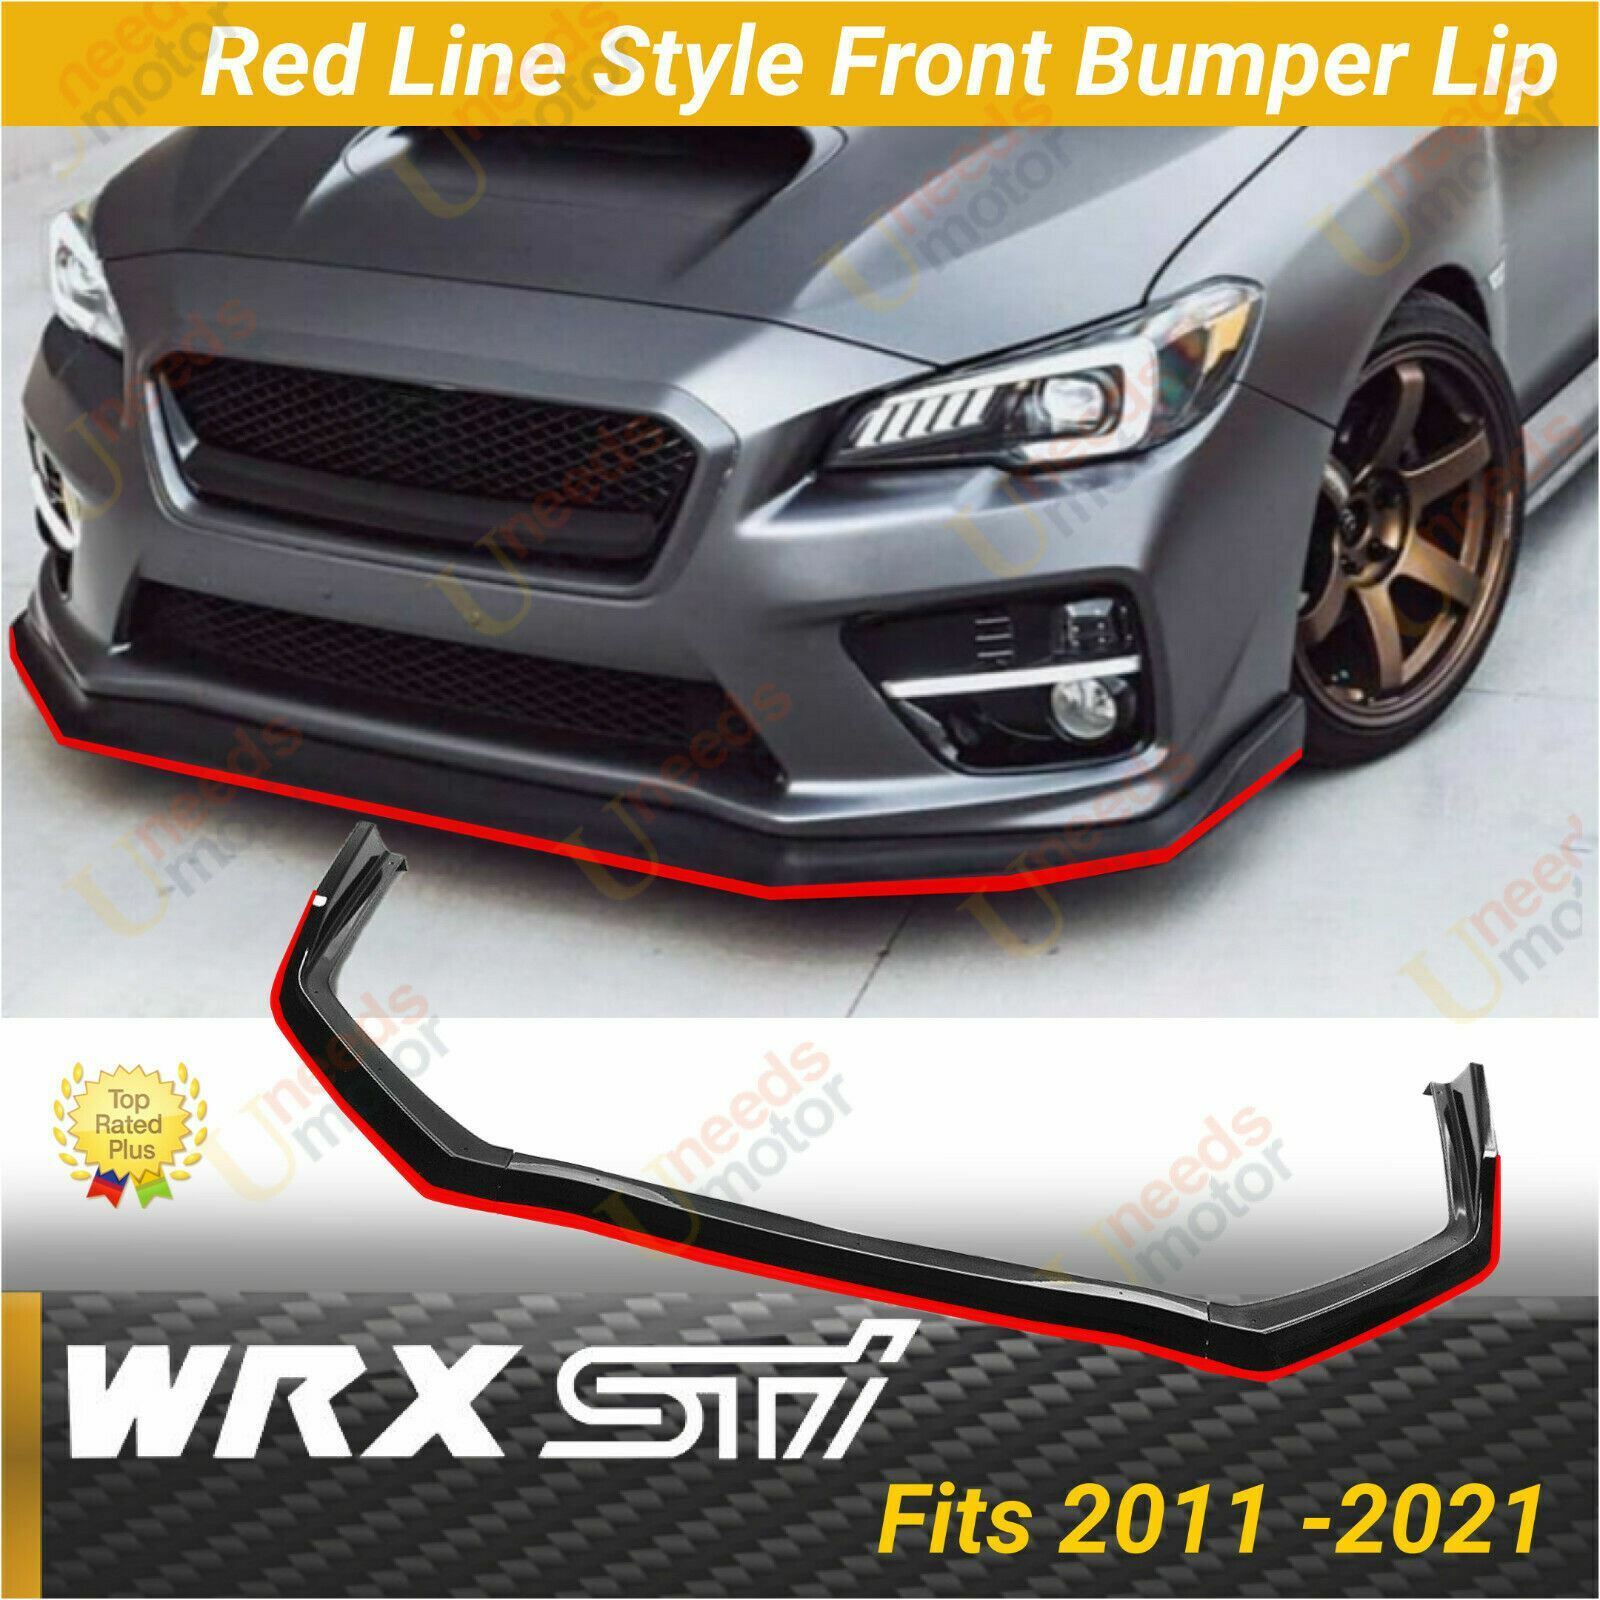 Fits Subaru WRX STI 2015-21 Red Line Style Front Bumper Lip Chin Spoiler